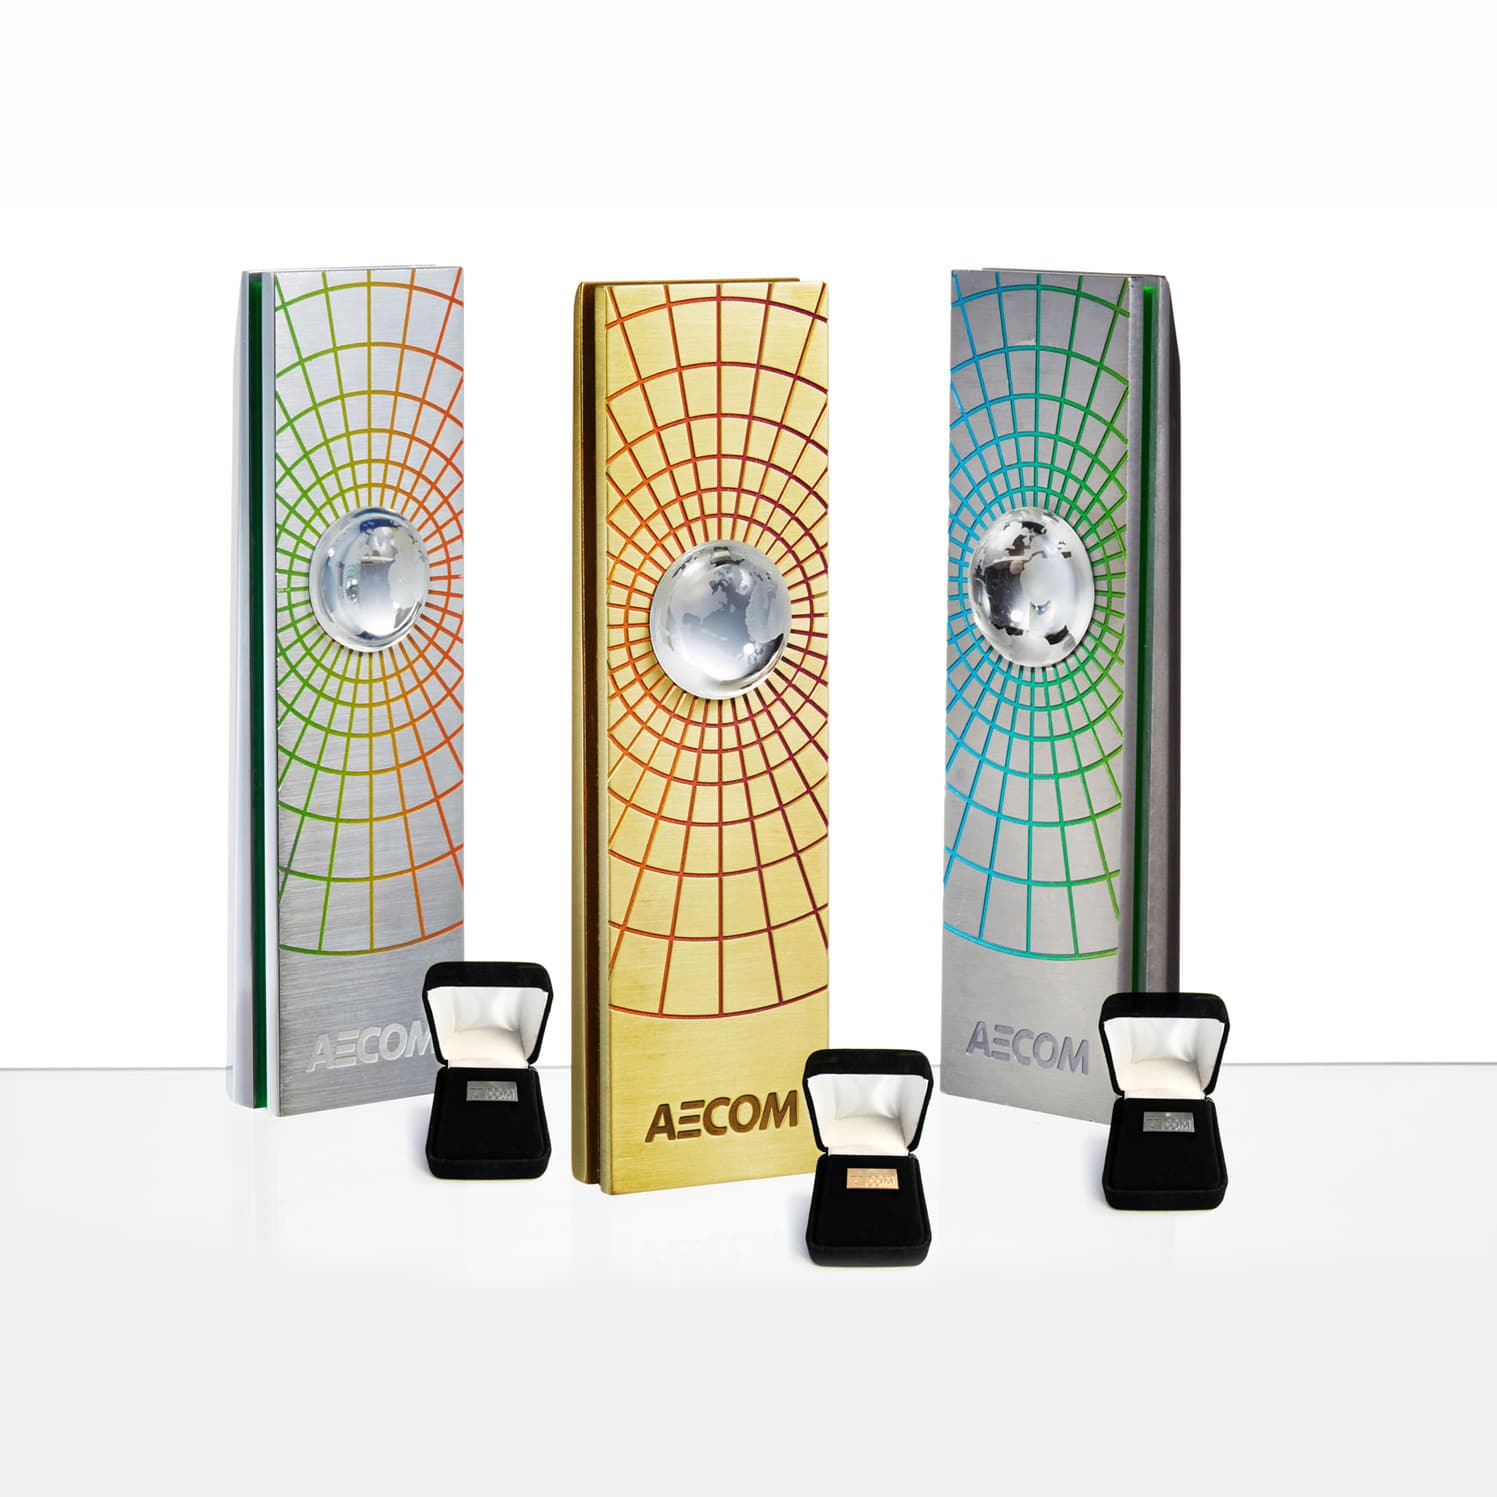 AECom Awards and Pins